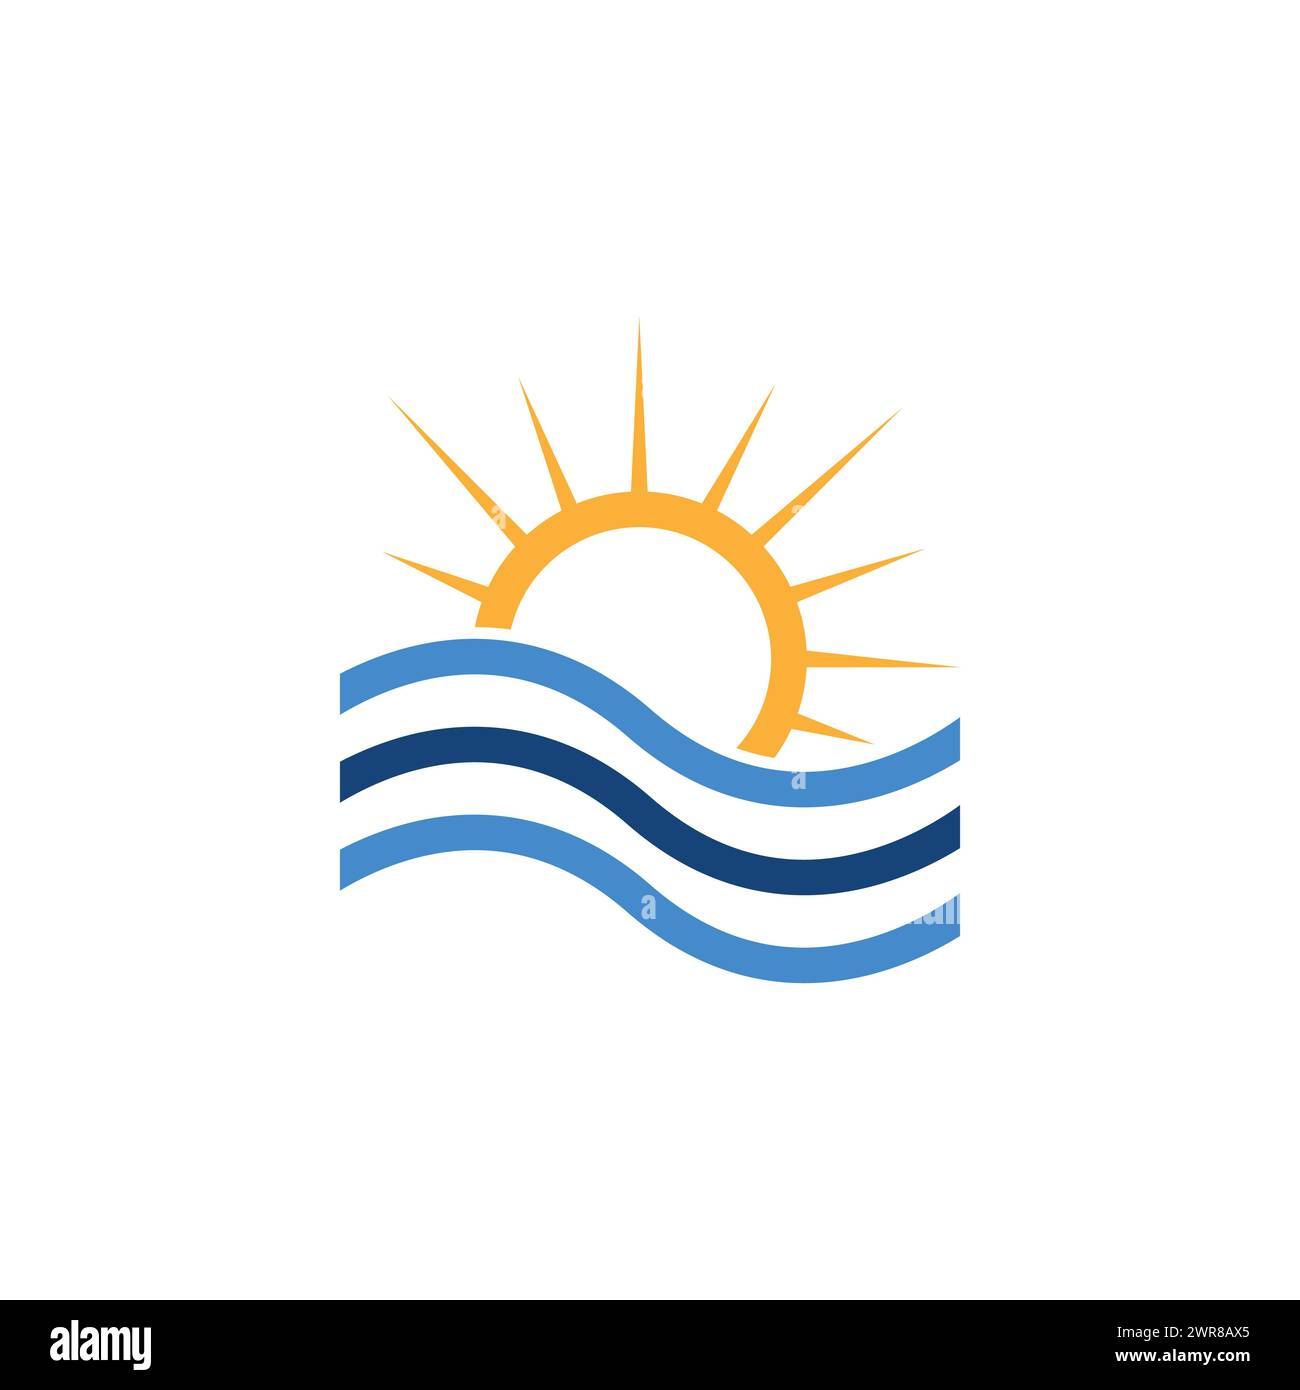 Design semplice e moderno con logo astratto per il tramonto vettoriale del sole giallo e delle onde blu del mare. Logo Sun Wave, logo Sun minimalista Illustrazione Vettoriale